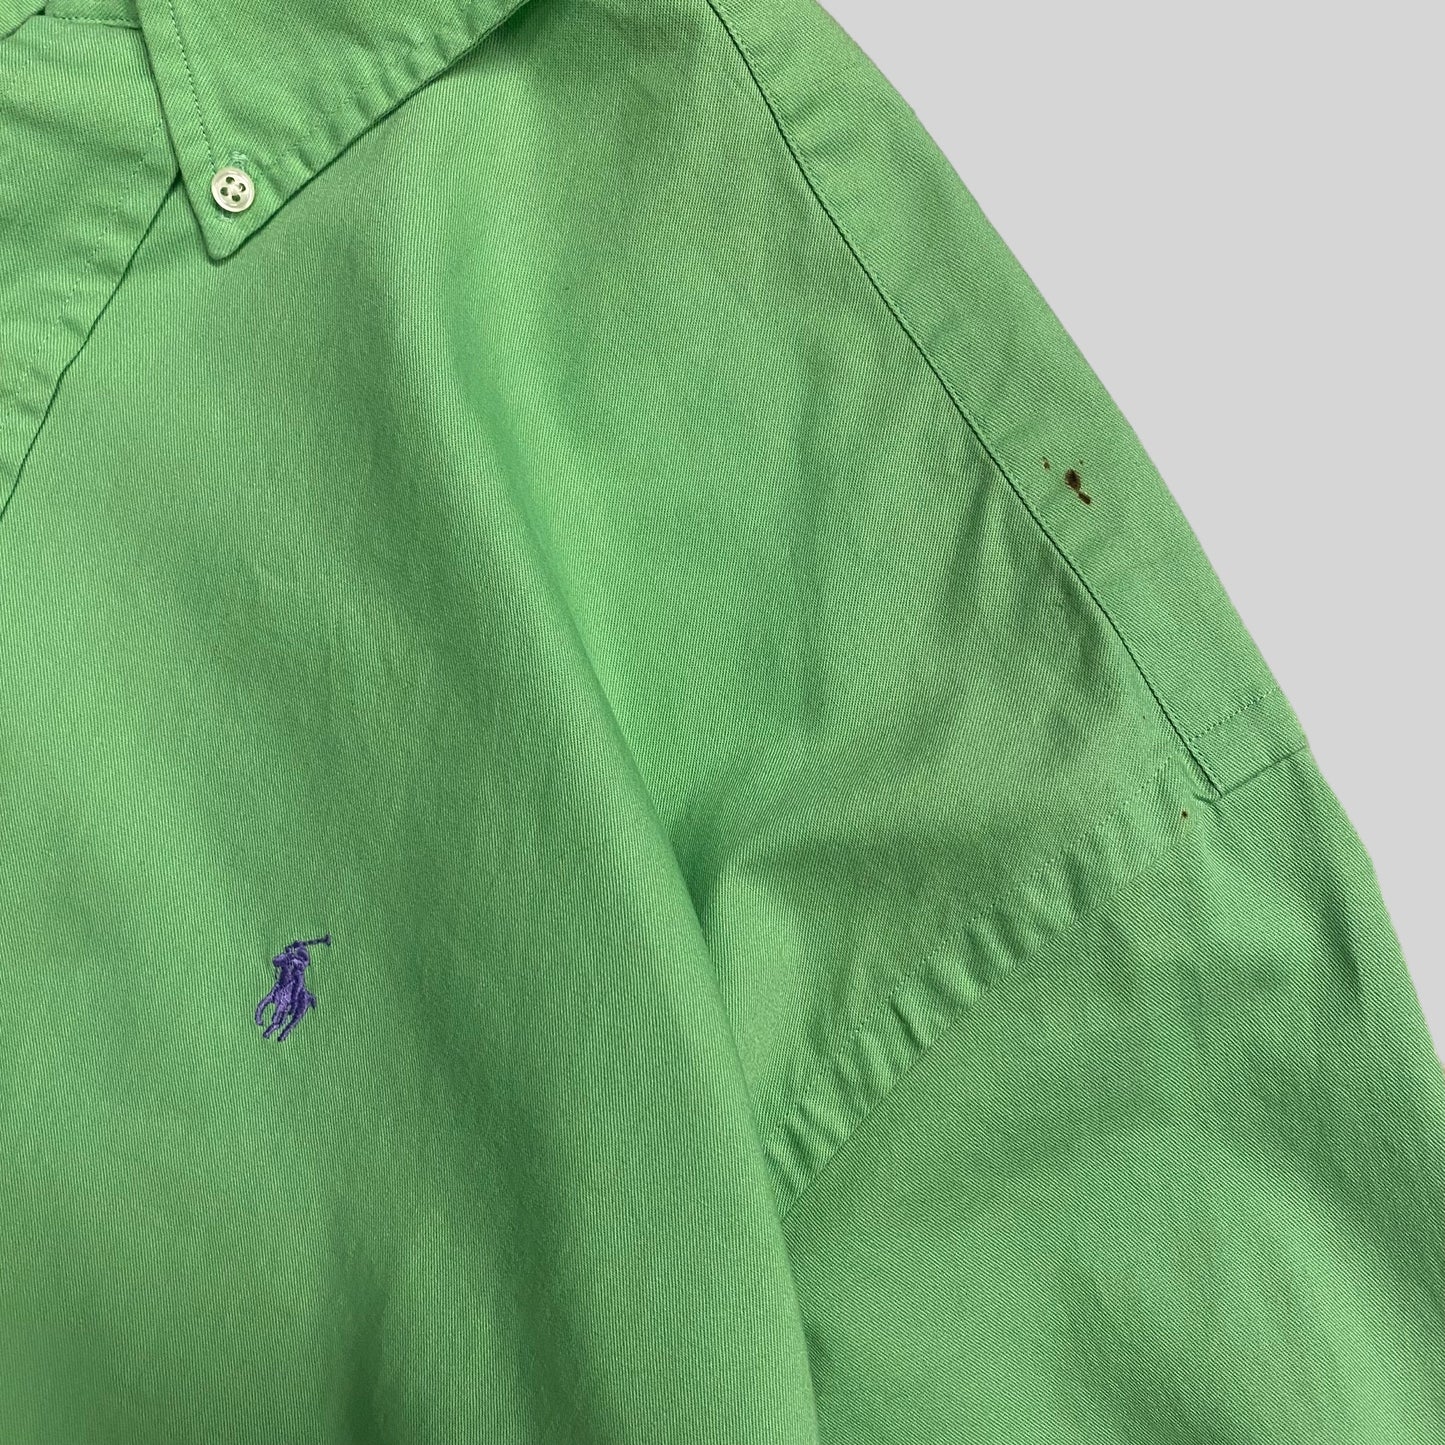 Ralph Lauren shirt BLEAK green